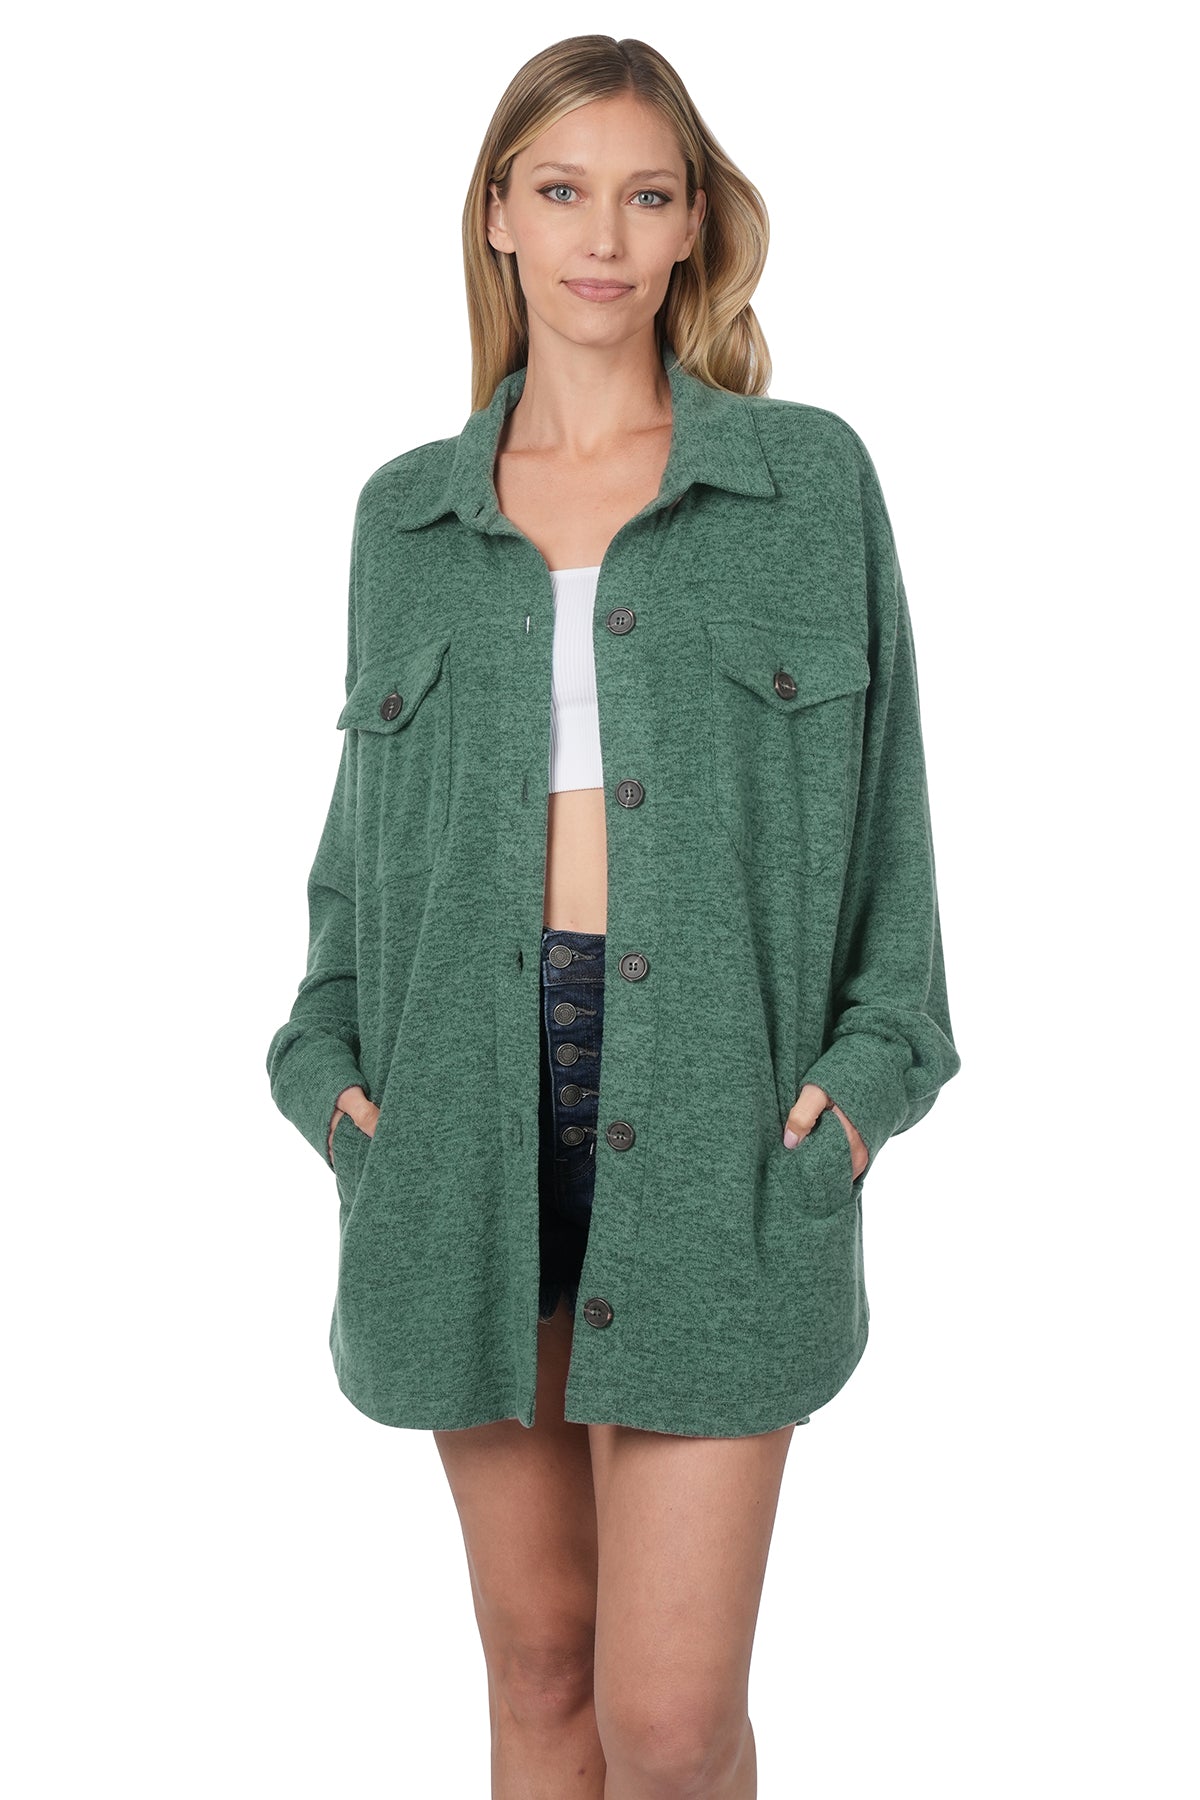 Zenana Oversized Side Slit Sweater - kentlyn's